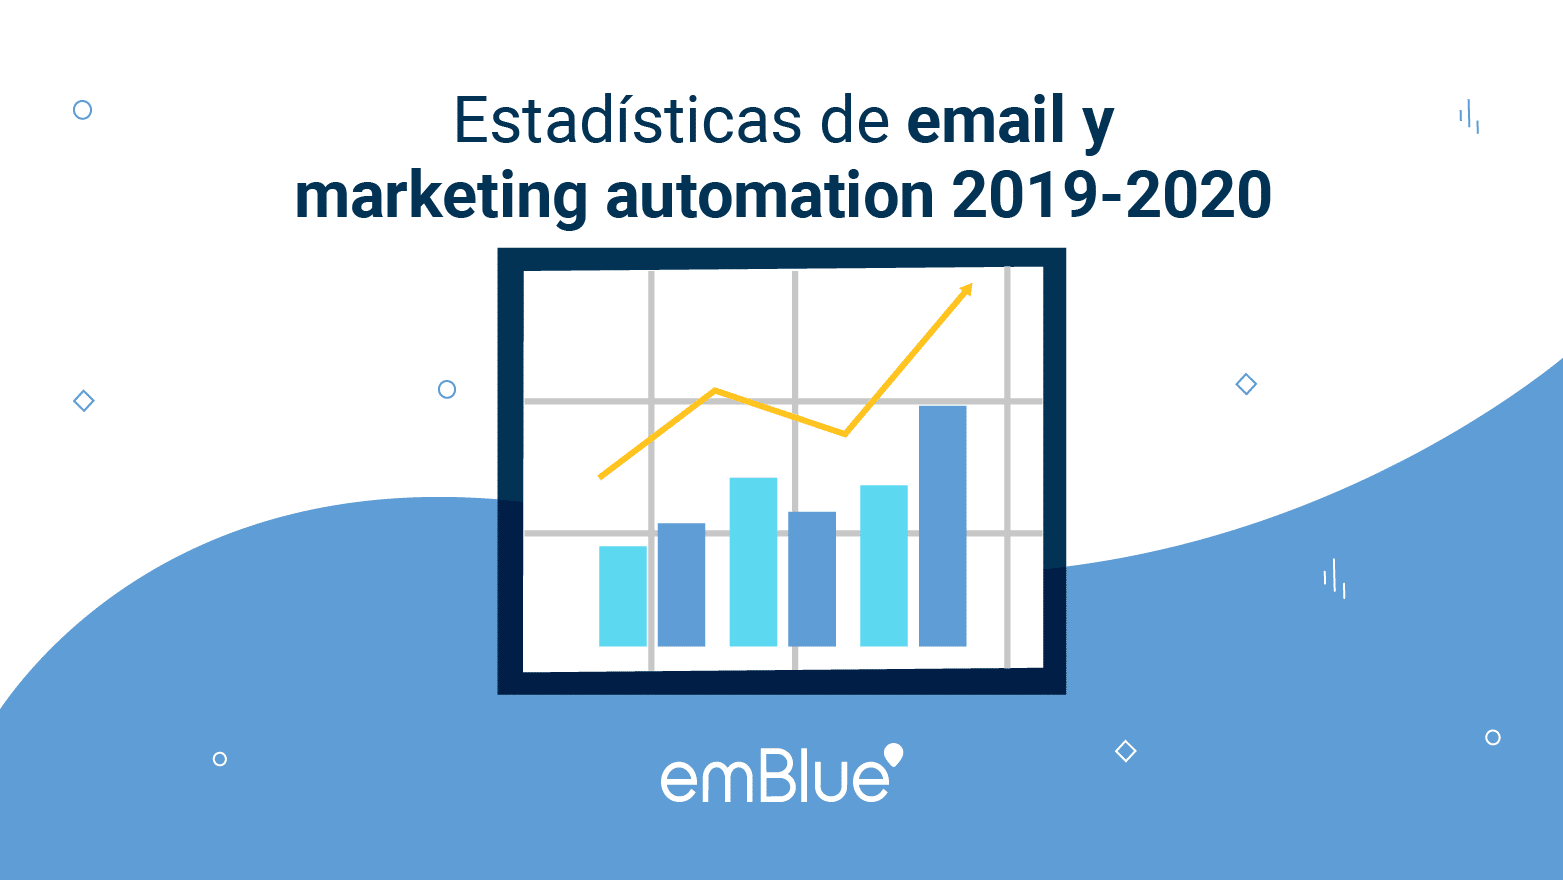 Estadísticas de email y marketing automation 2019-2020